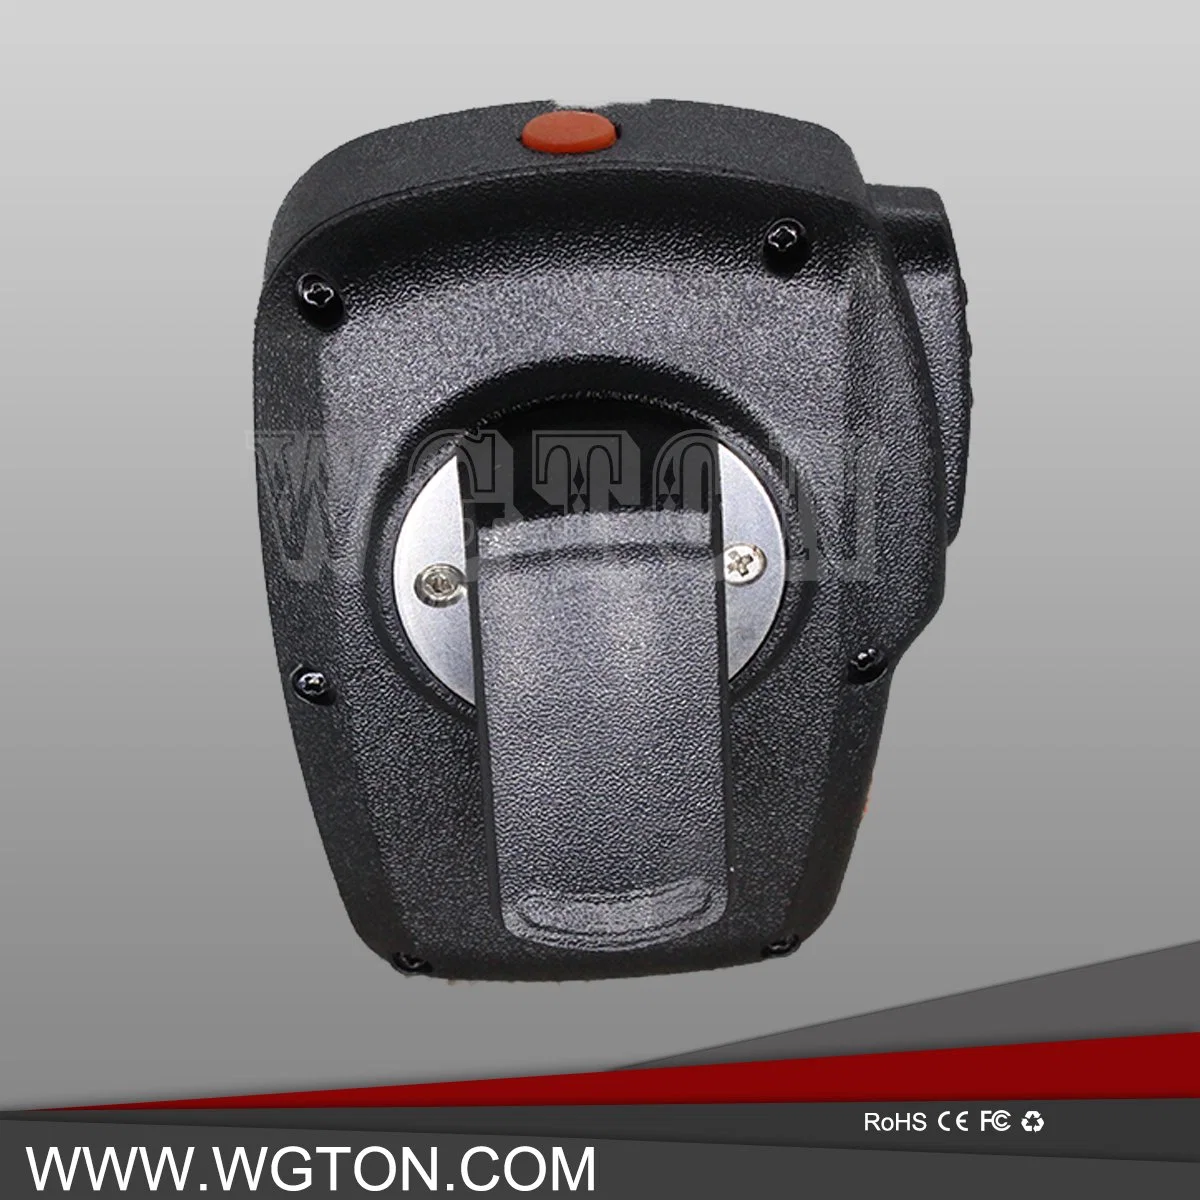 Wgton Bt150 Haut-parleur Bluetooth Microphone Casque sans fil Oreillette Haut-parleur d'épaule Microphone pour Smart Poc Raido 3G/4G.